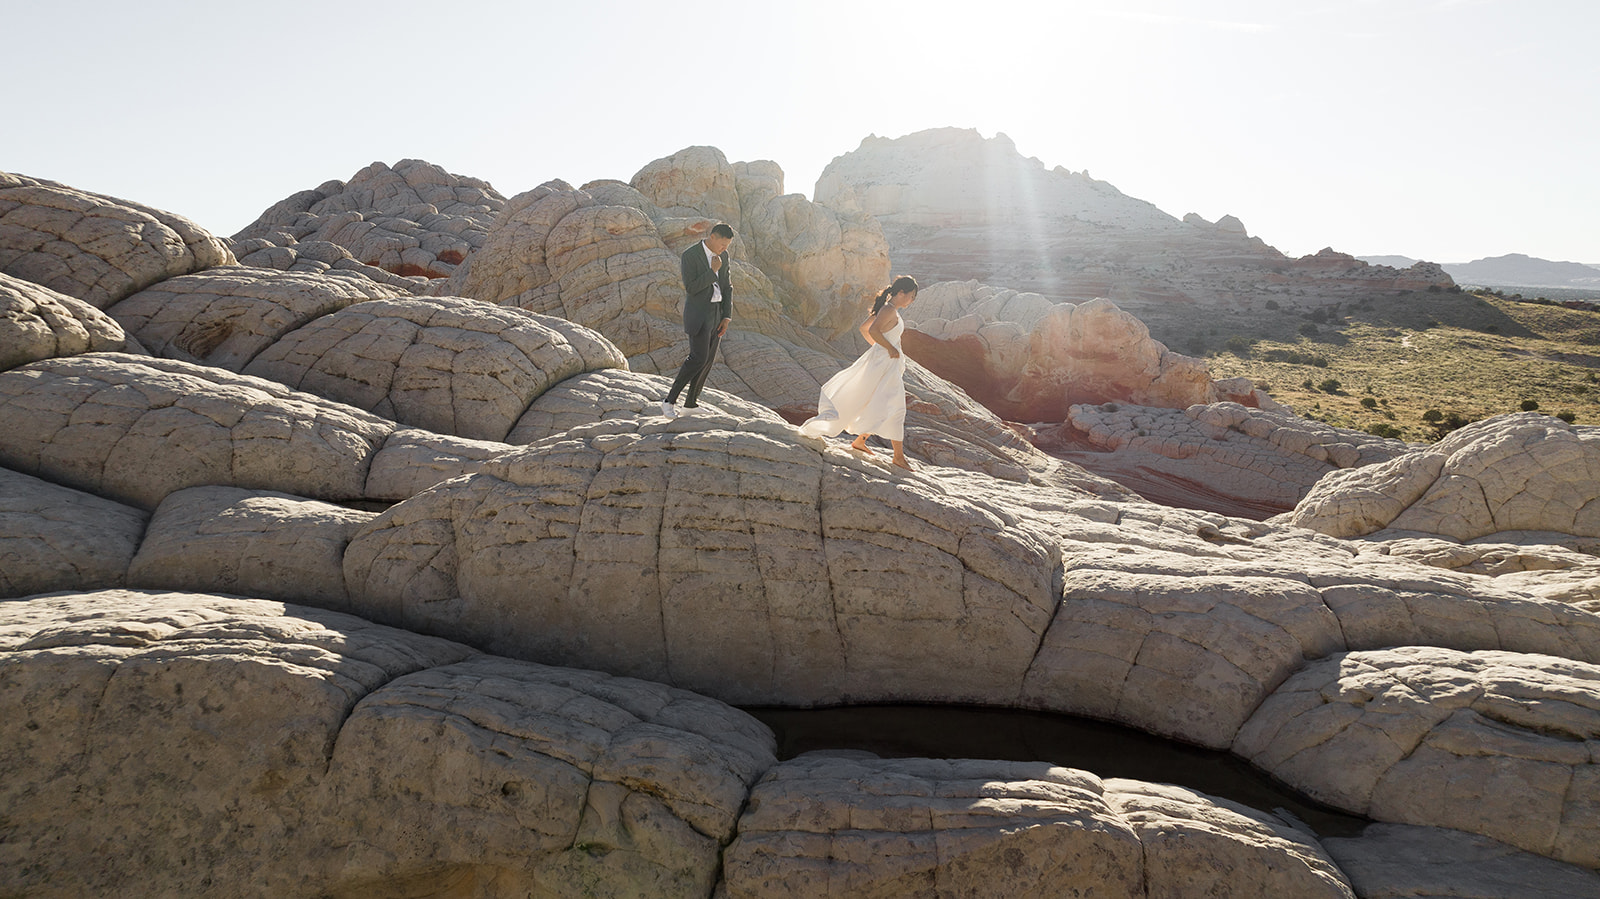 Couple walking on the "doomes" at White Pocket Arizona 